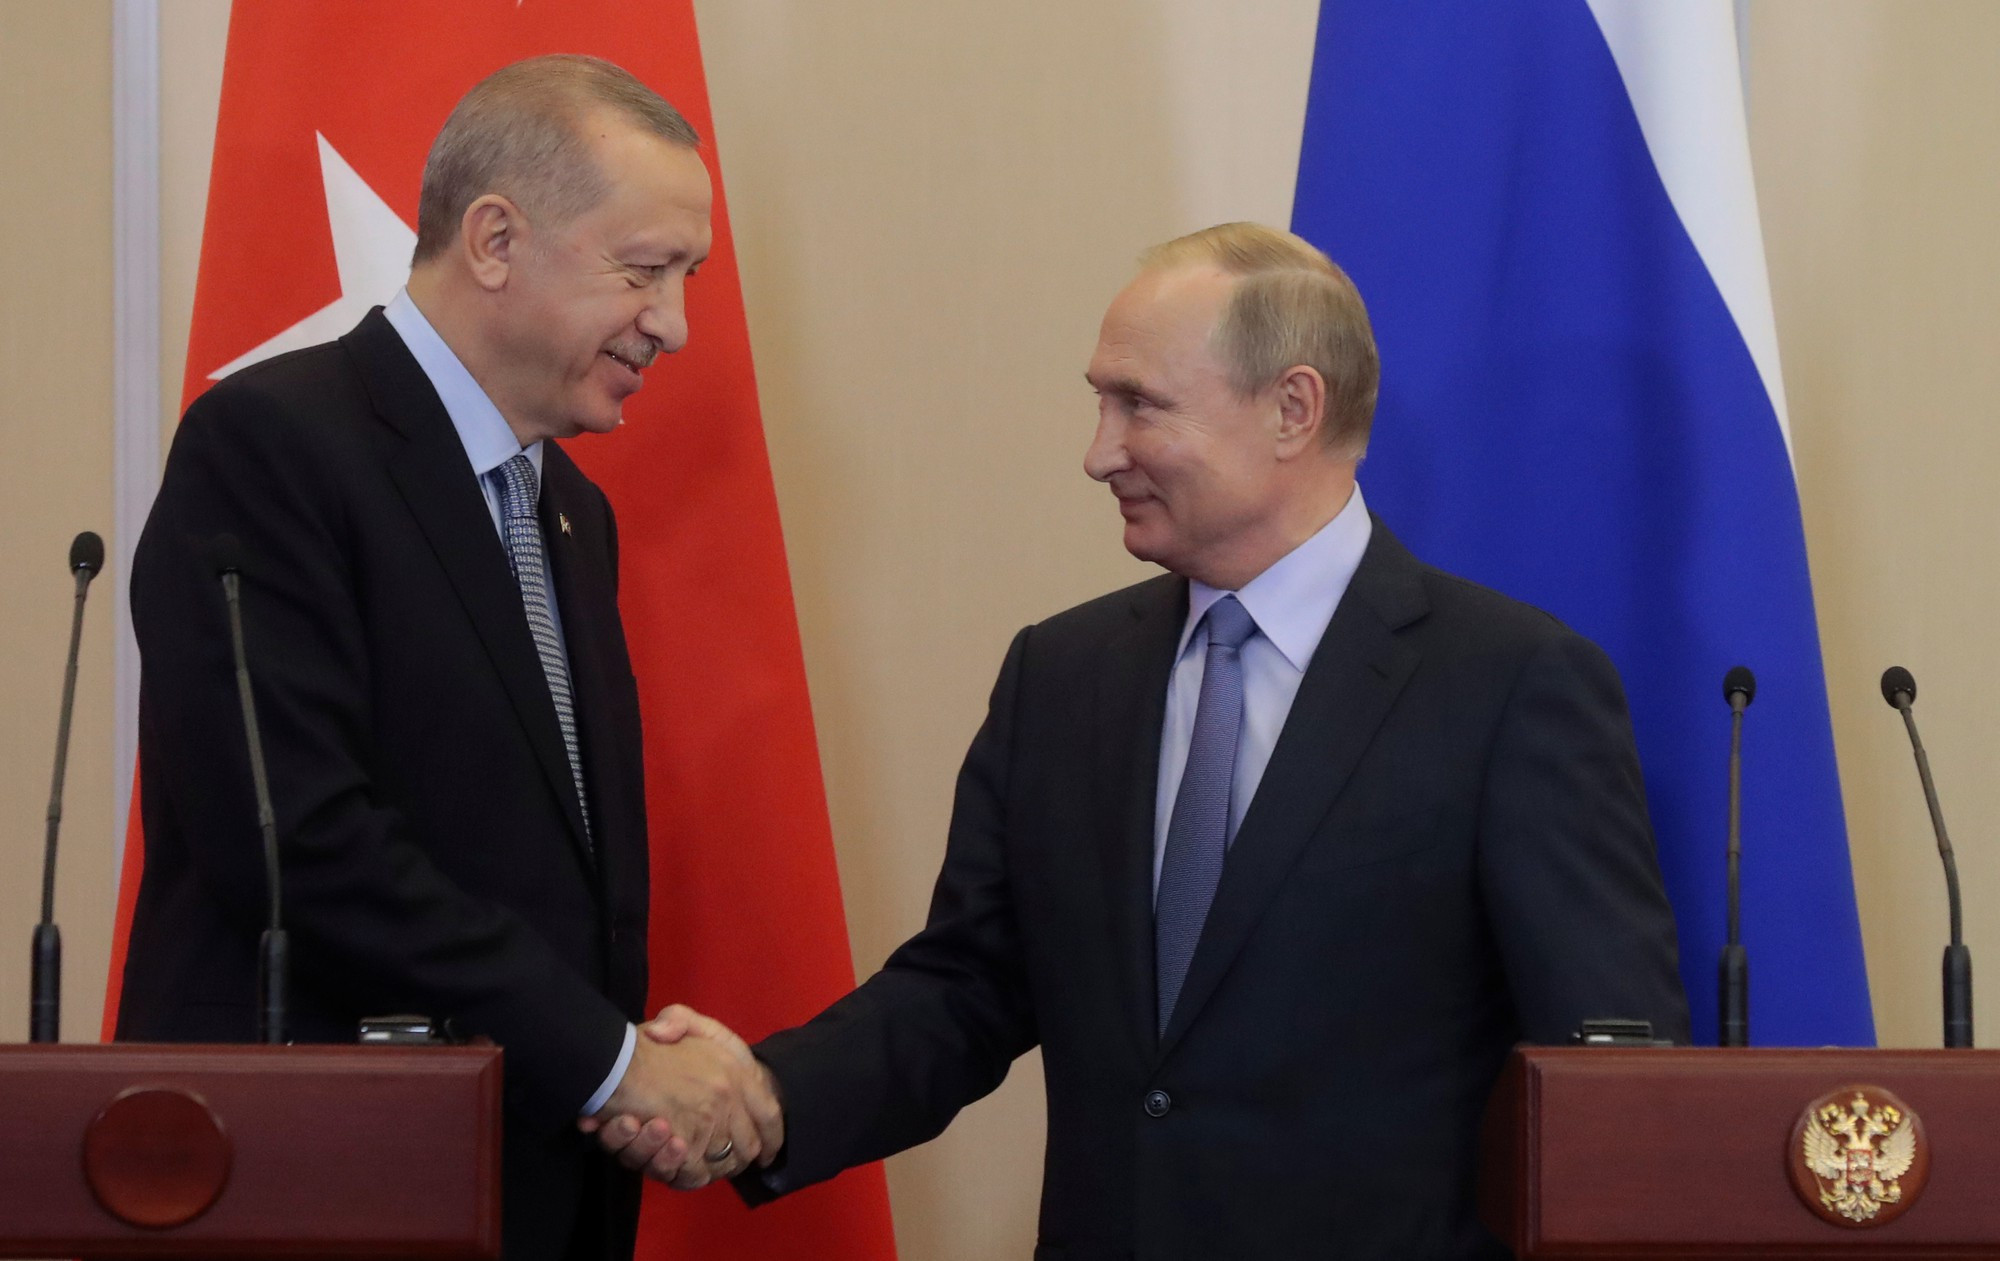 Tổng thống Thổ Nhĩ Kỳ Tayip Erdogan và Tổng thống Nga Vladimir Putin bắt tay nhau tại Sochi, Nga ngày 22/10/2019. Ảnh: Reuters